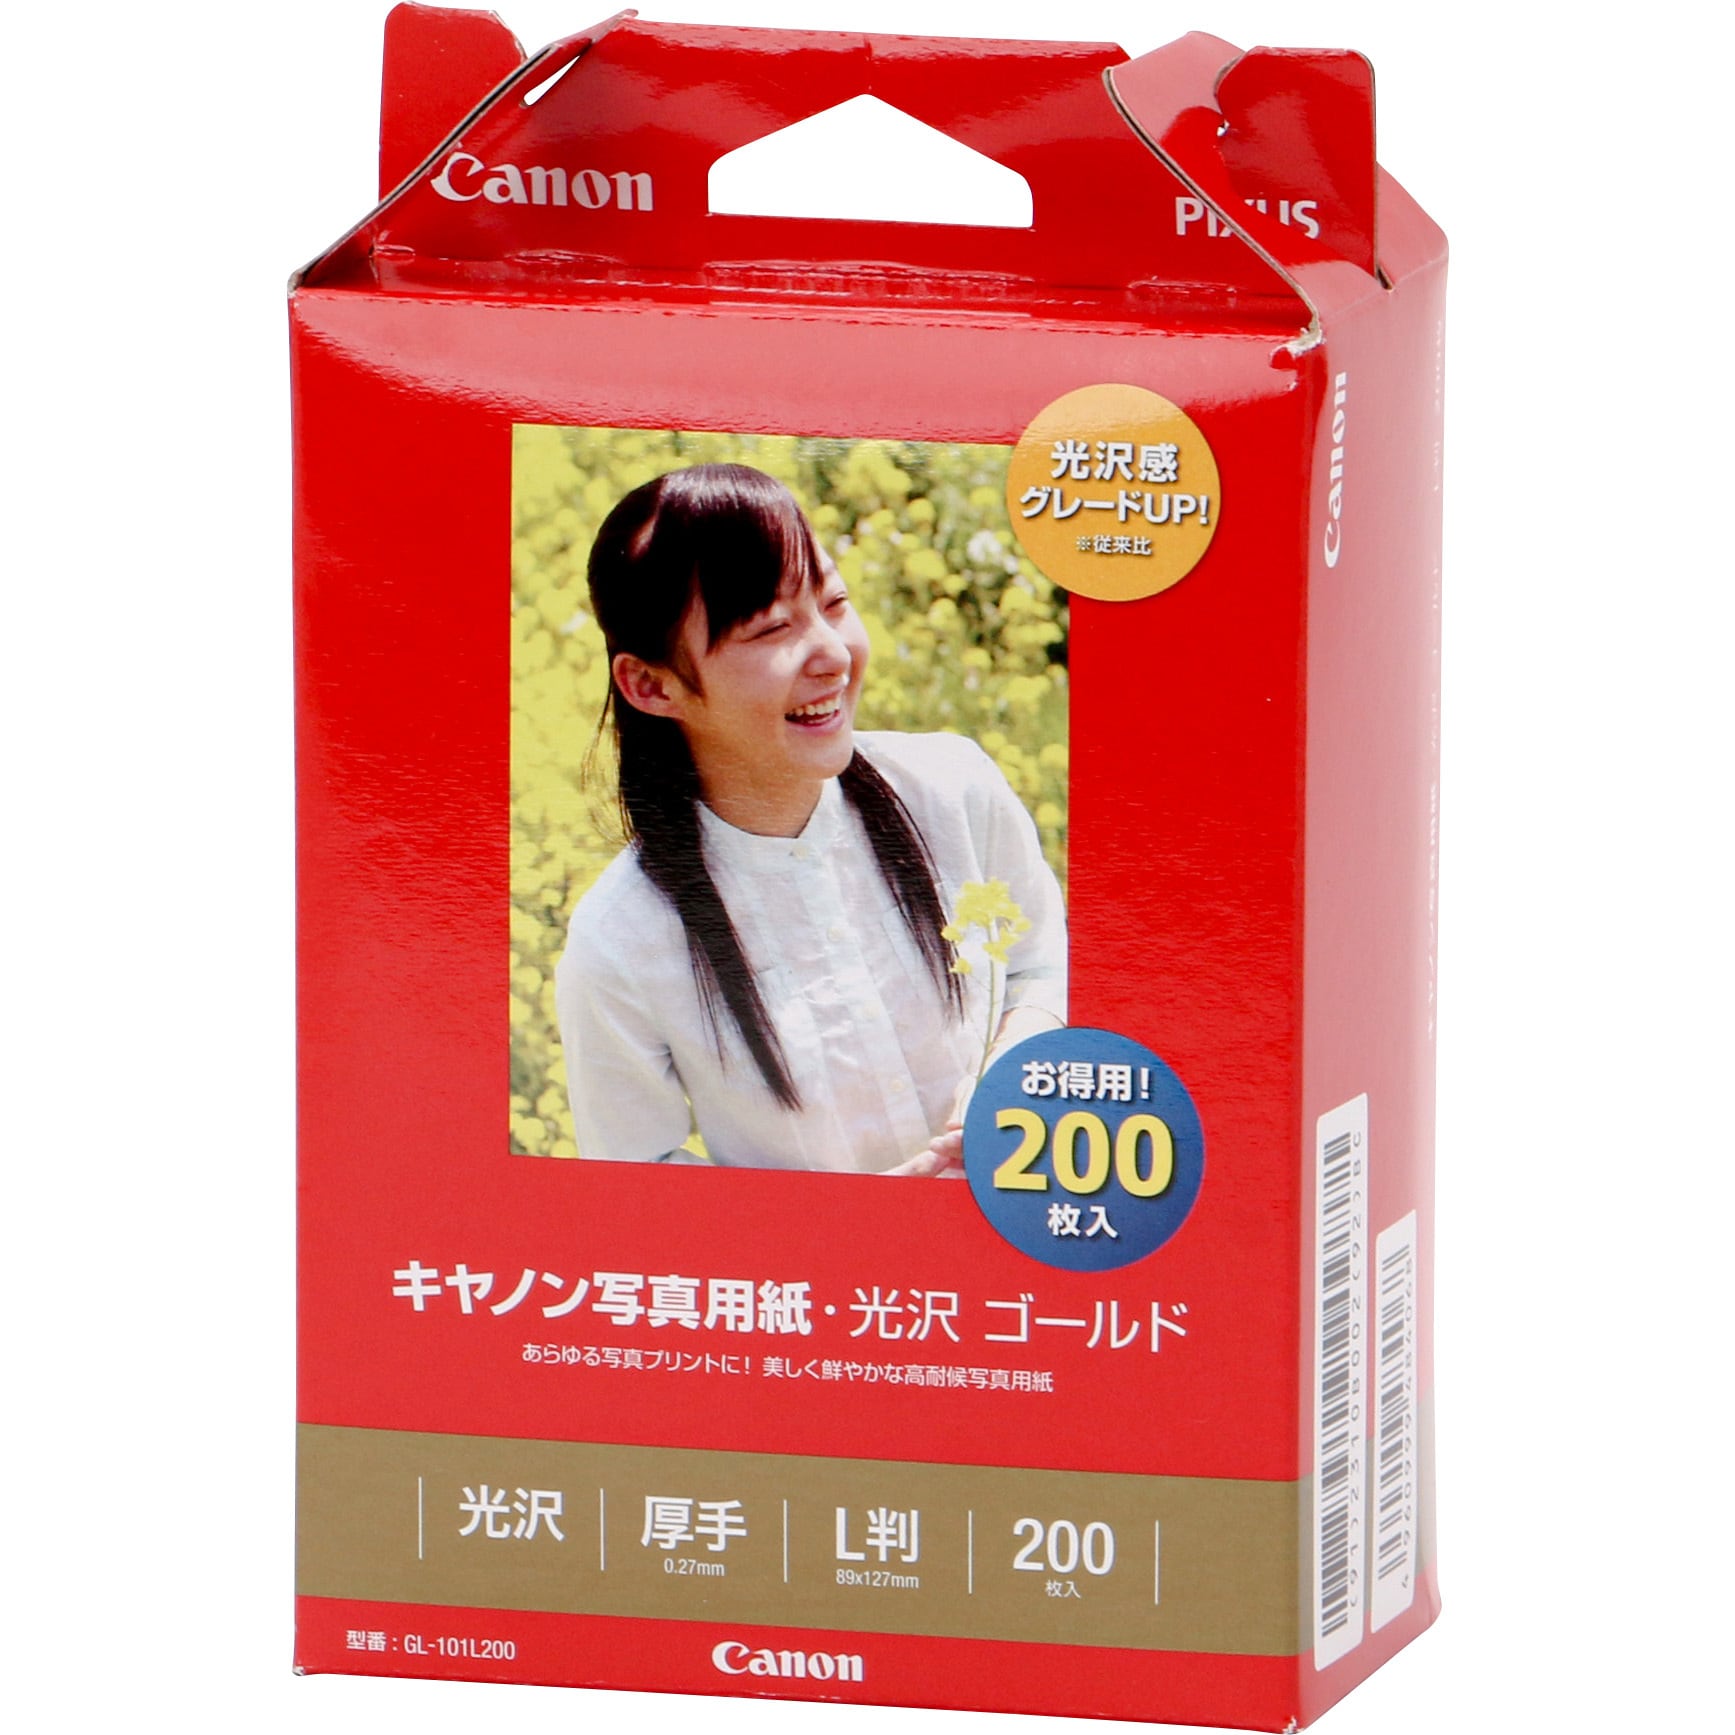 美品】 Canon キヤノン インクジェット用紙 CR-101A420